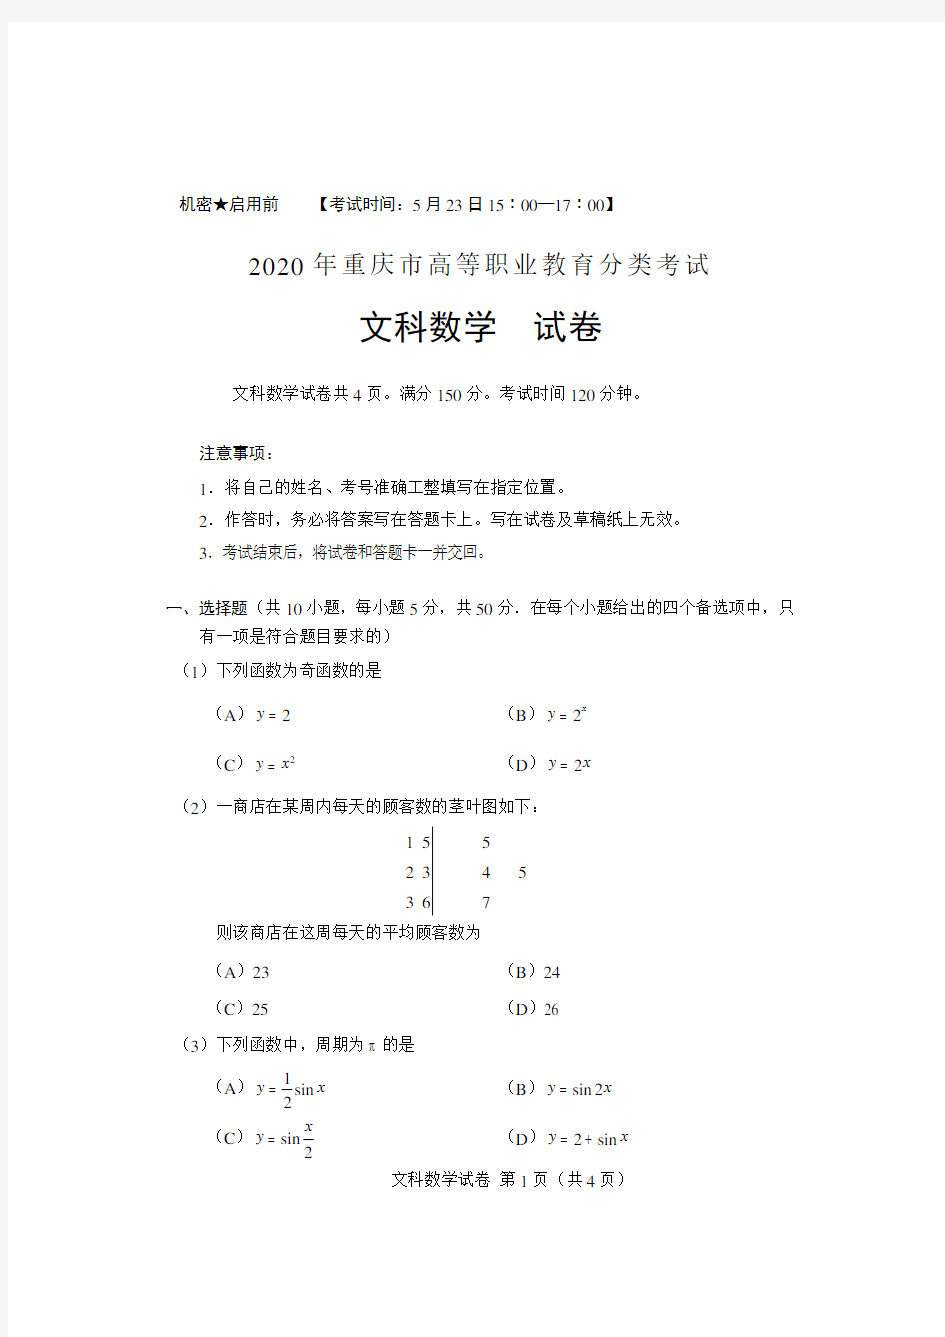 重庆市2020年高职分类考试招生数学(文科)试题及答案(重庆市春招考试)